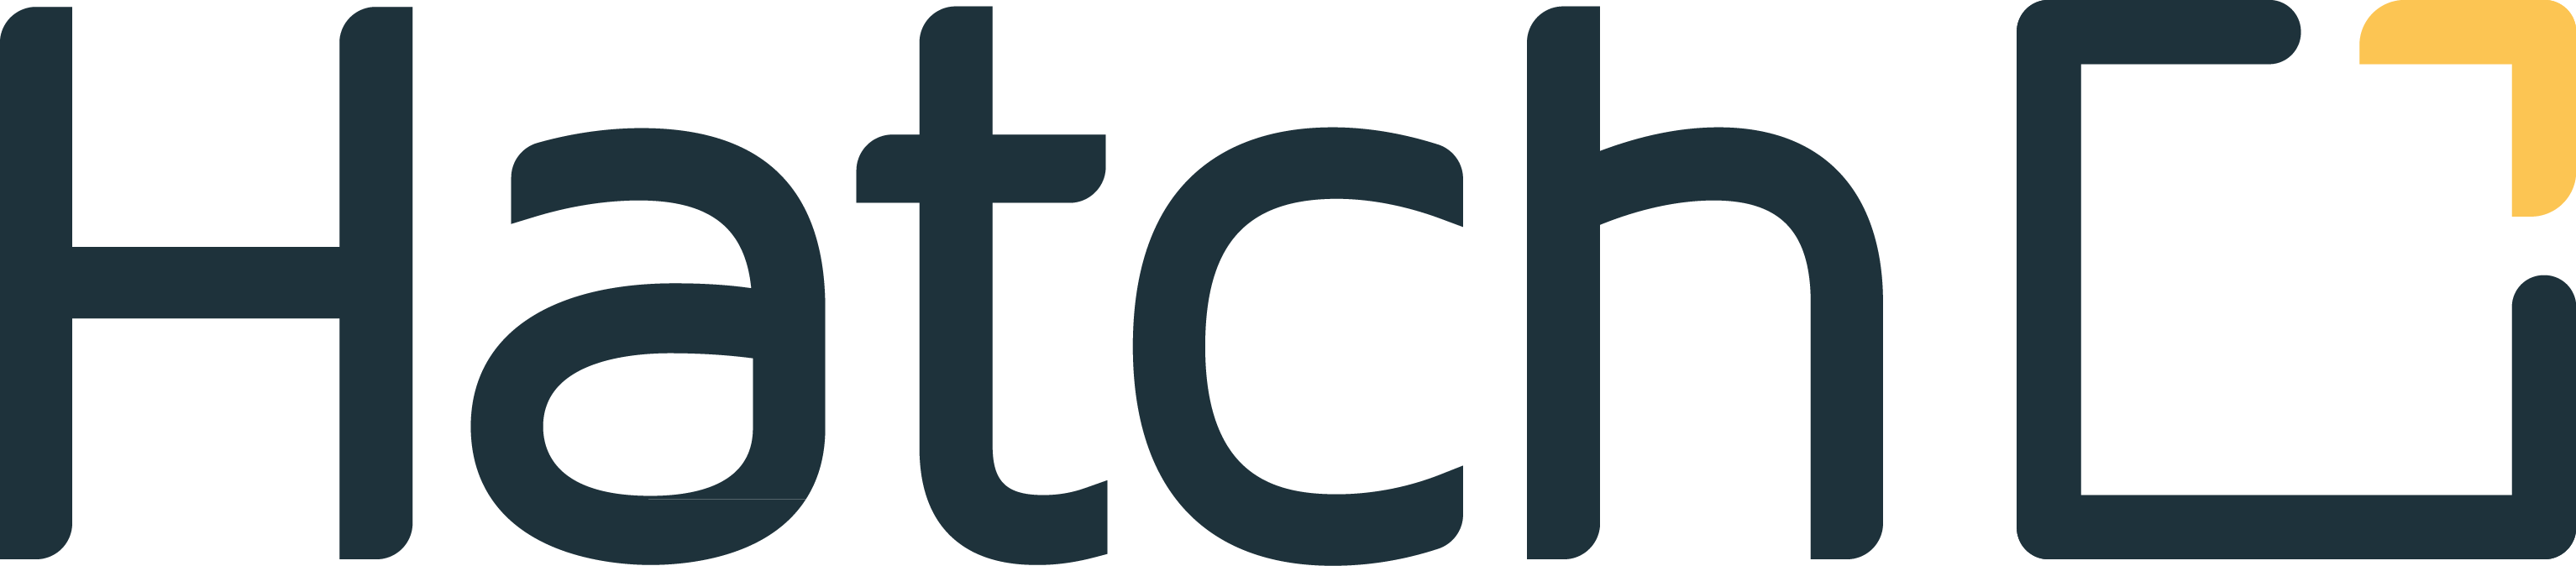 logo for Hatch Enterprise